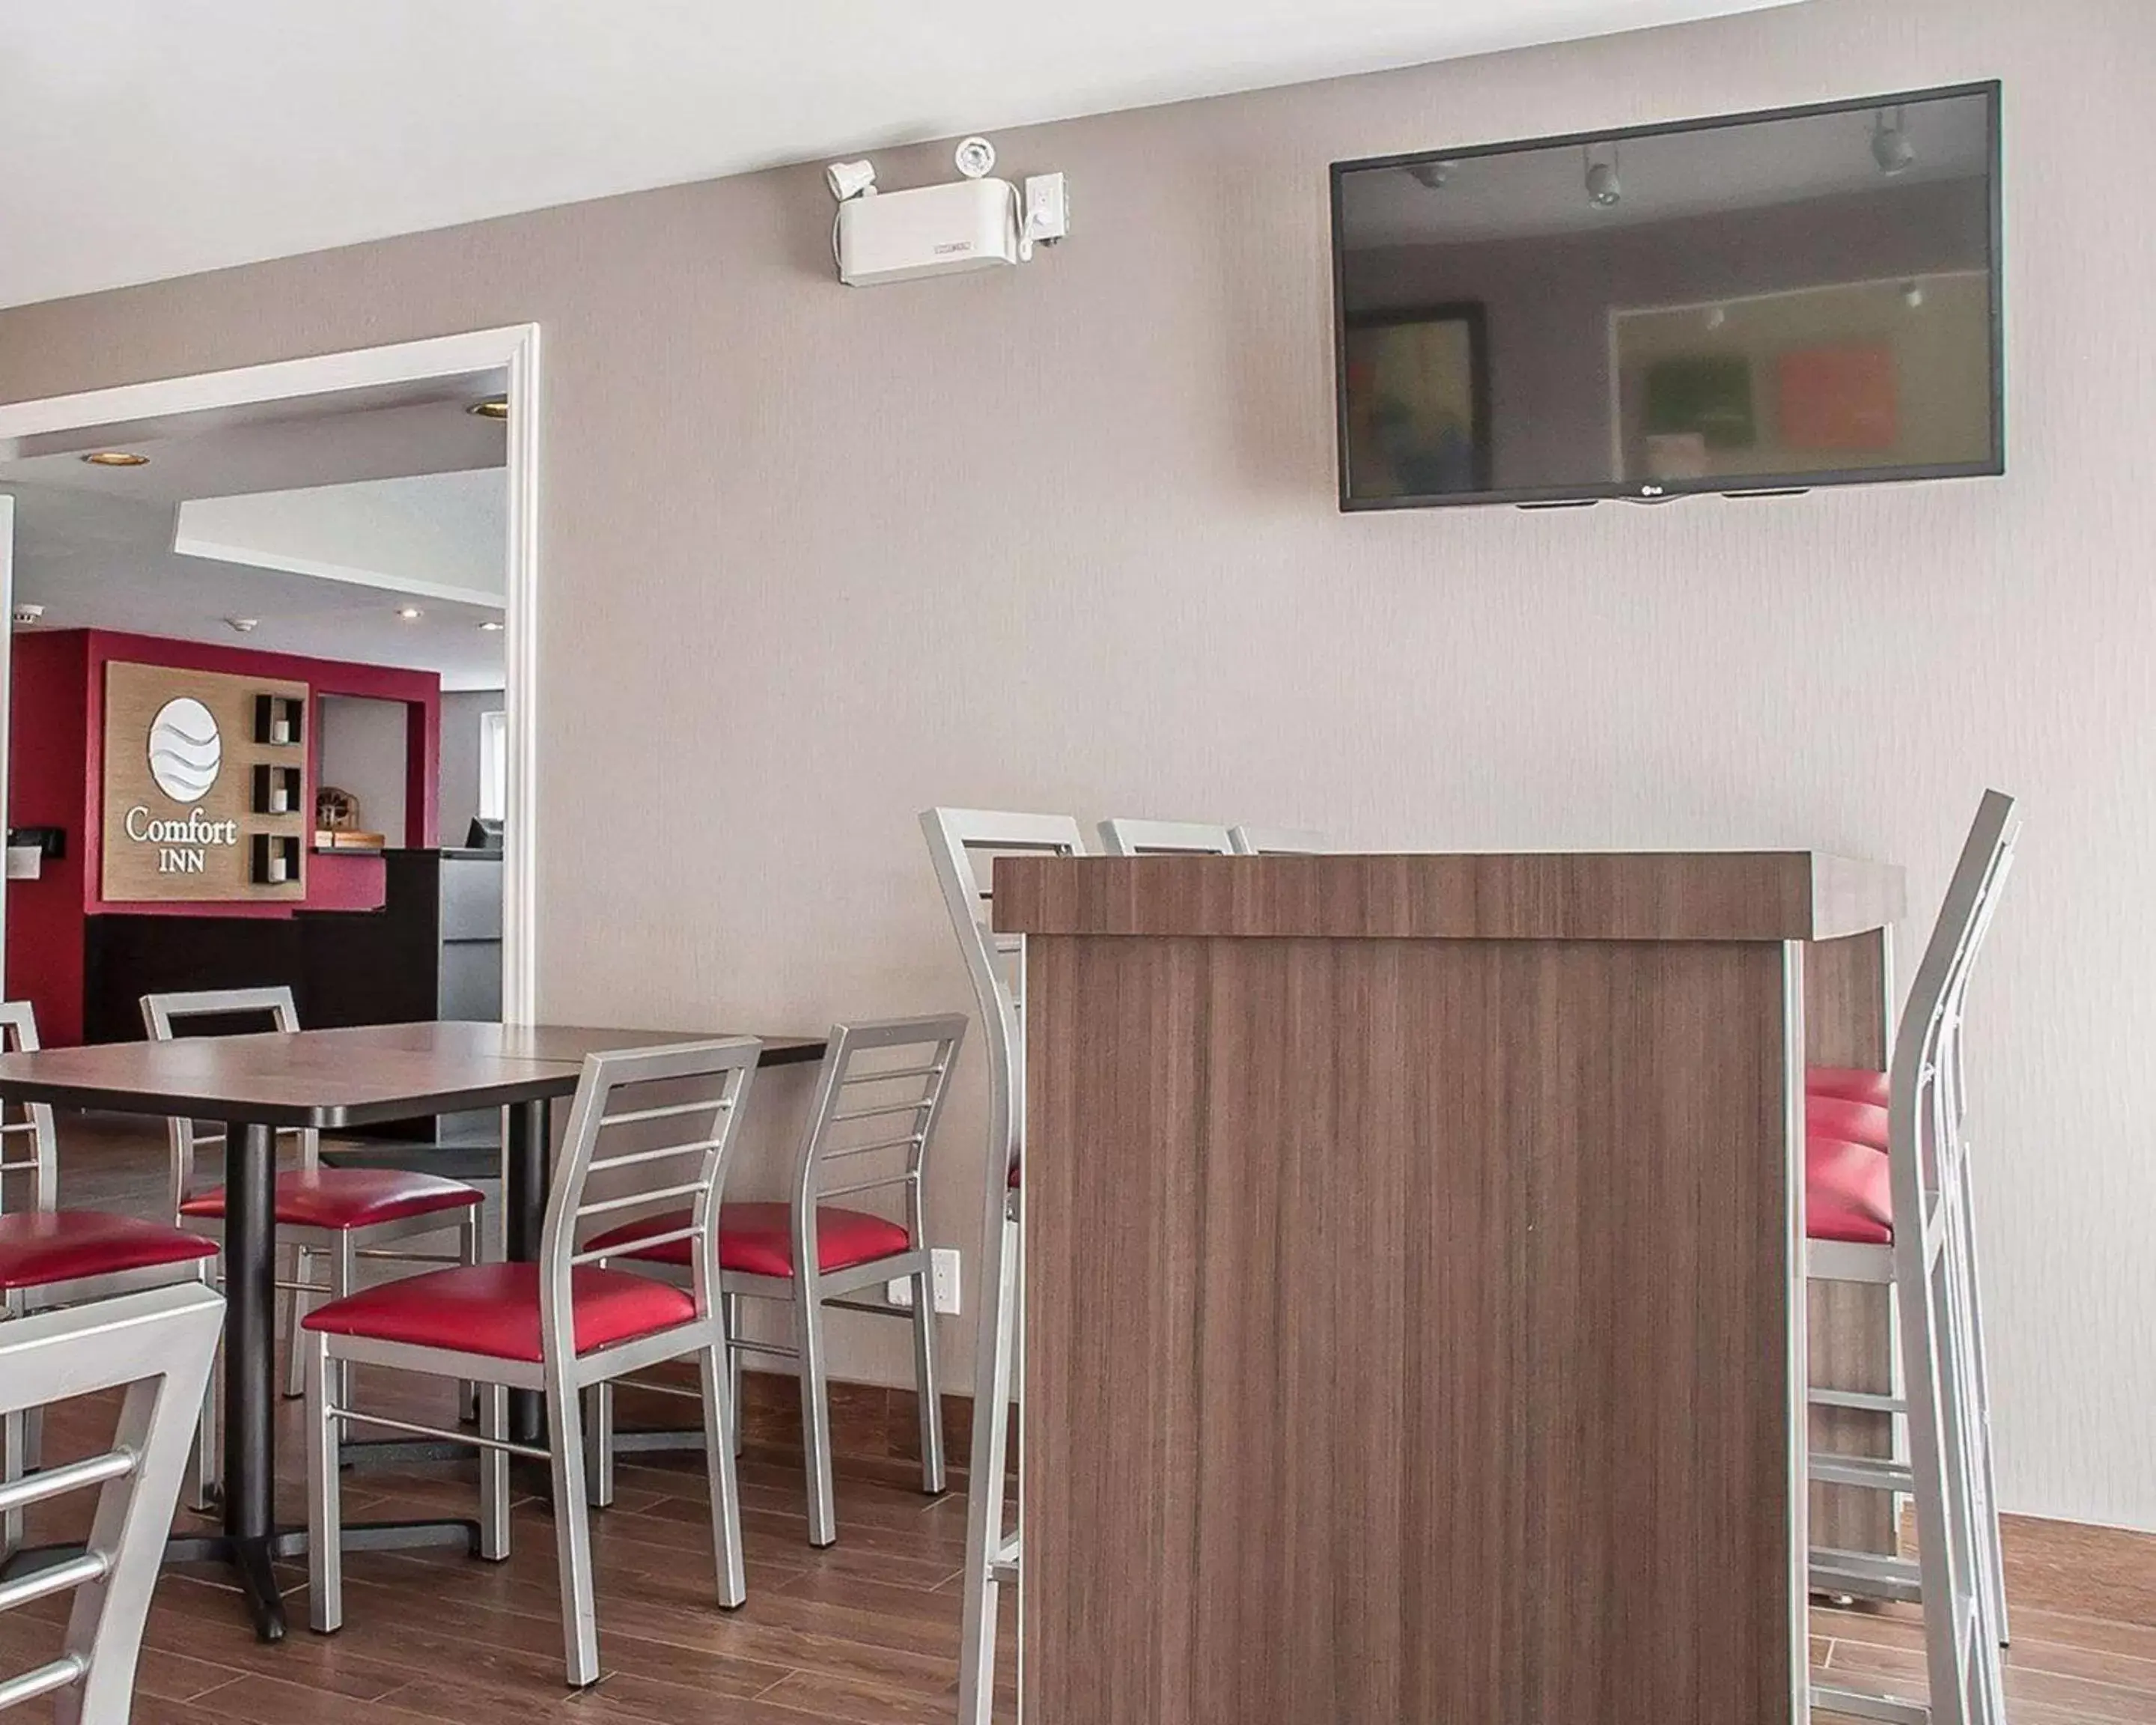 Restaurant/places to eat in Comfort Inn Orillia